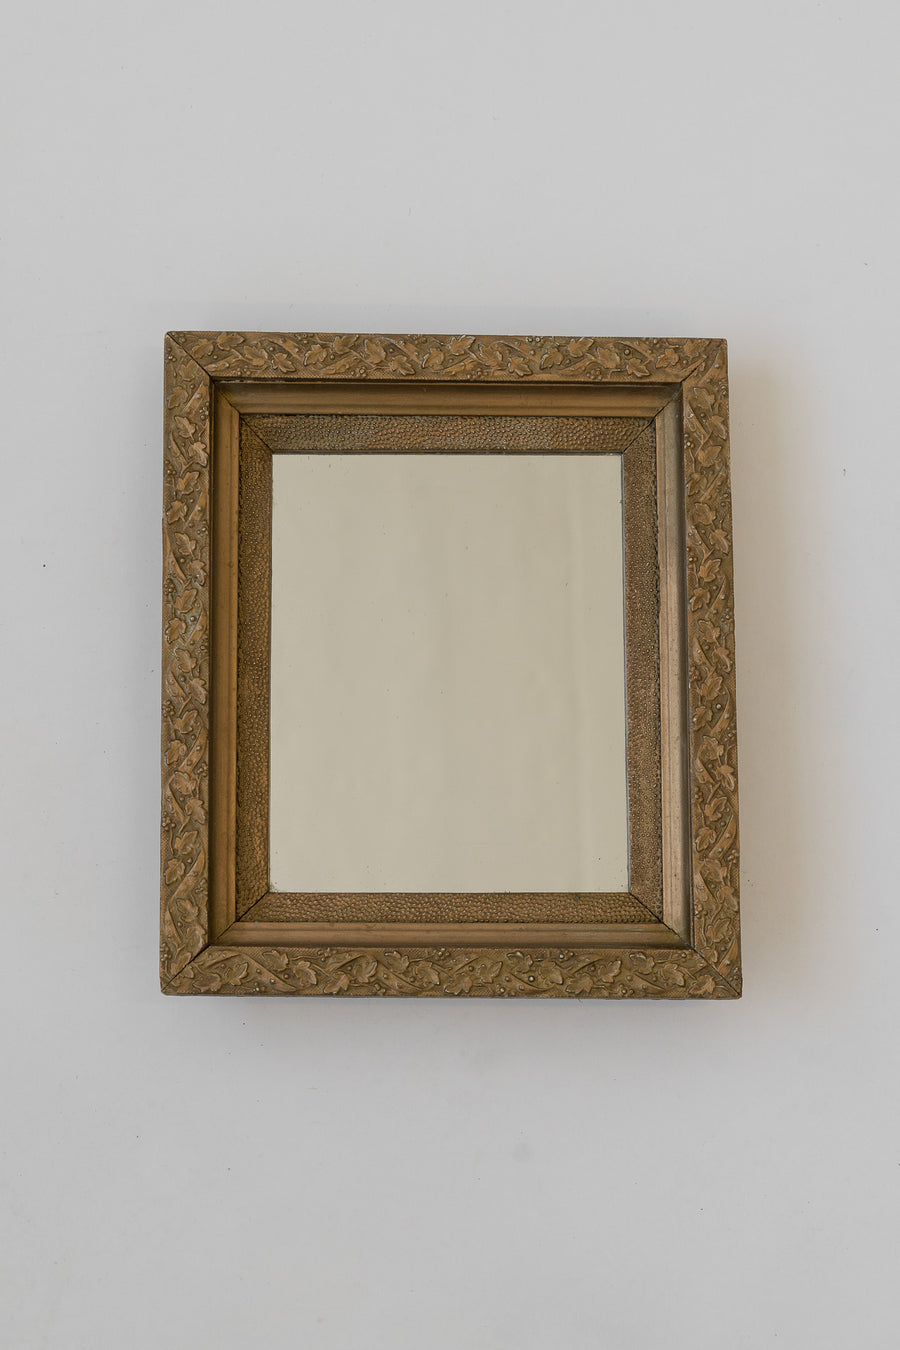 Carved Wood Framed Mirror